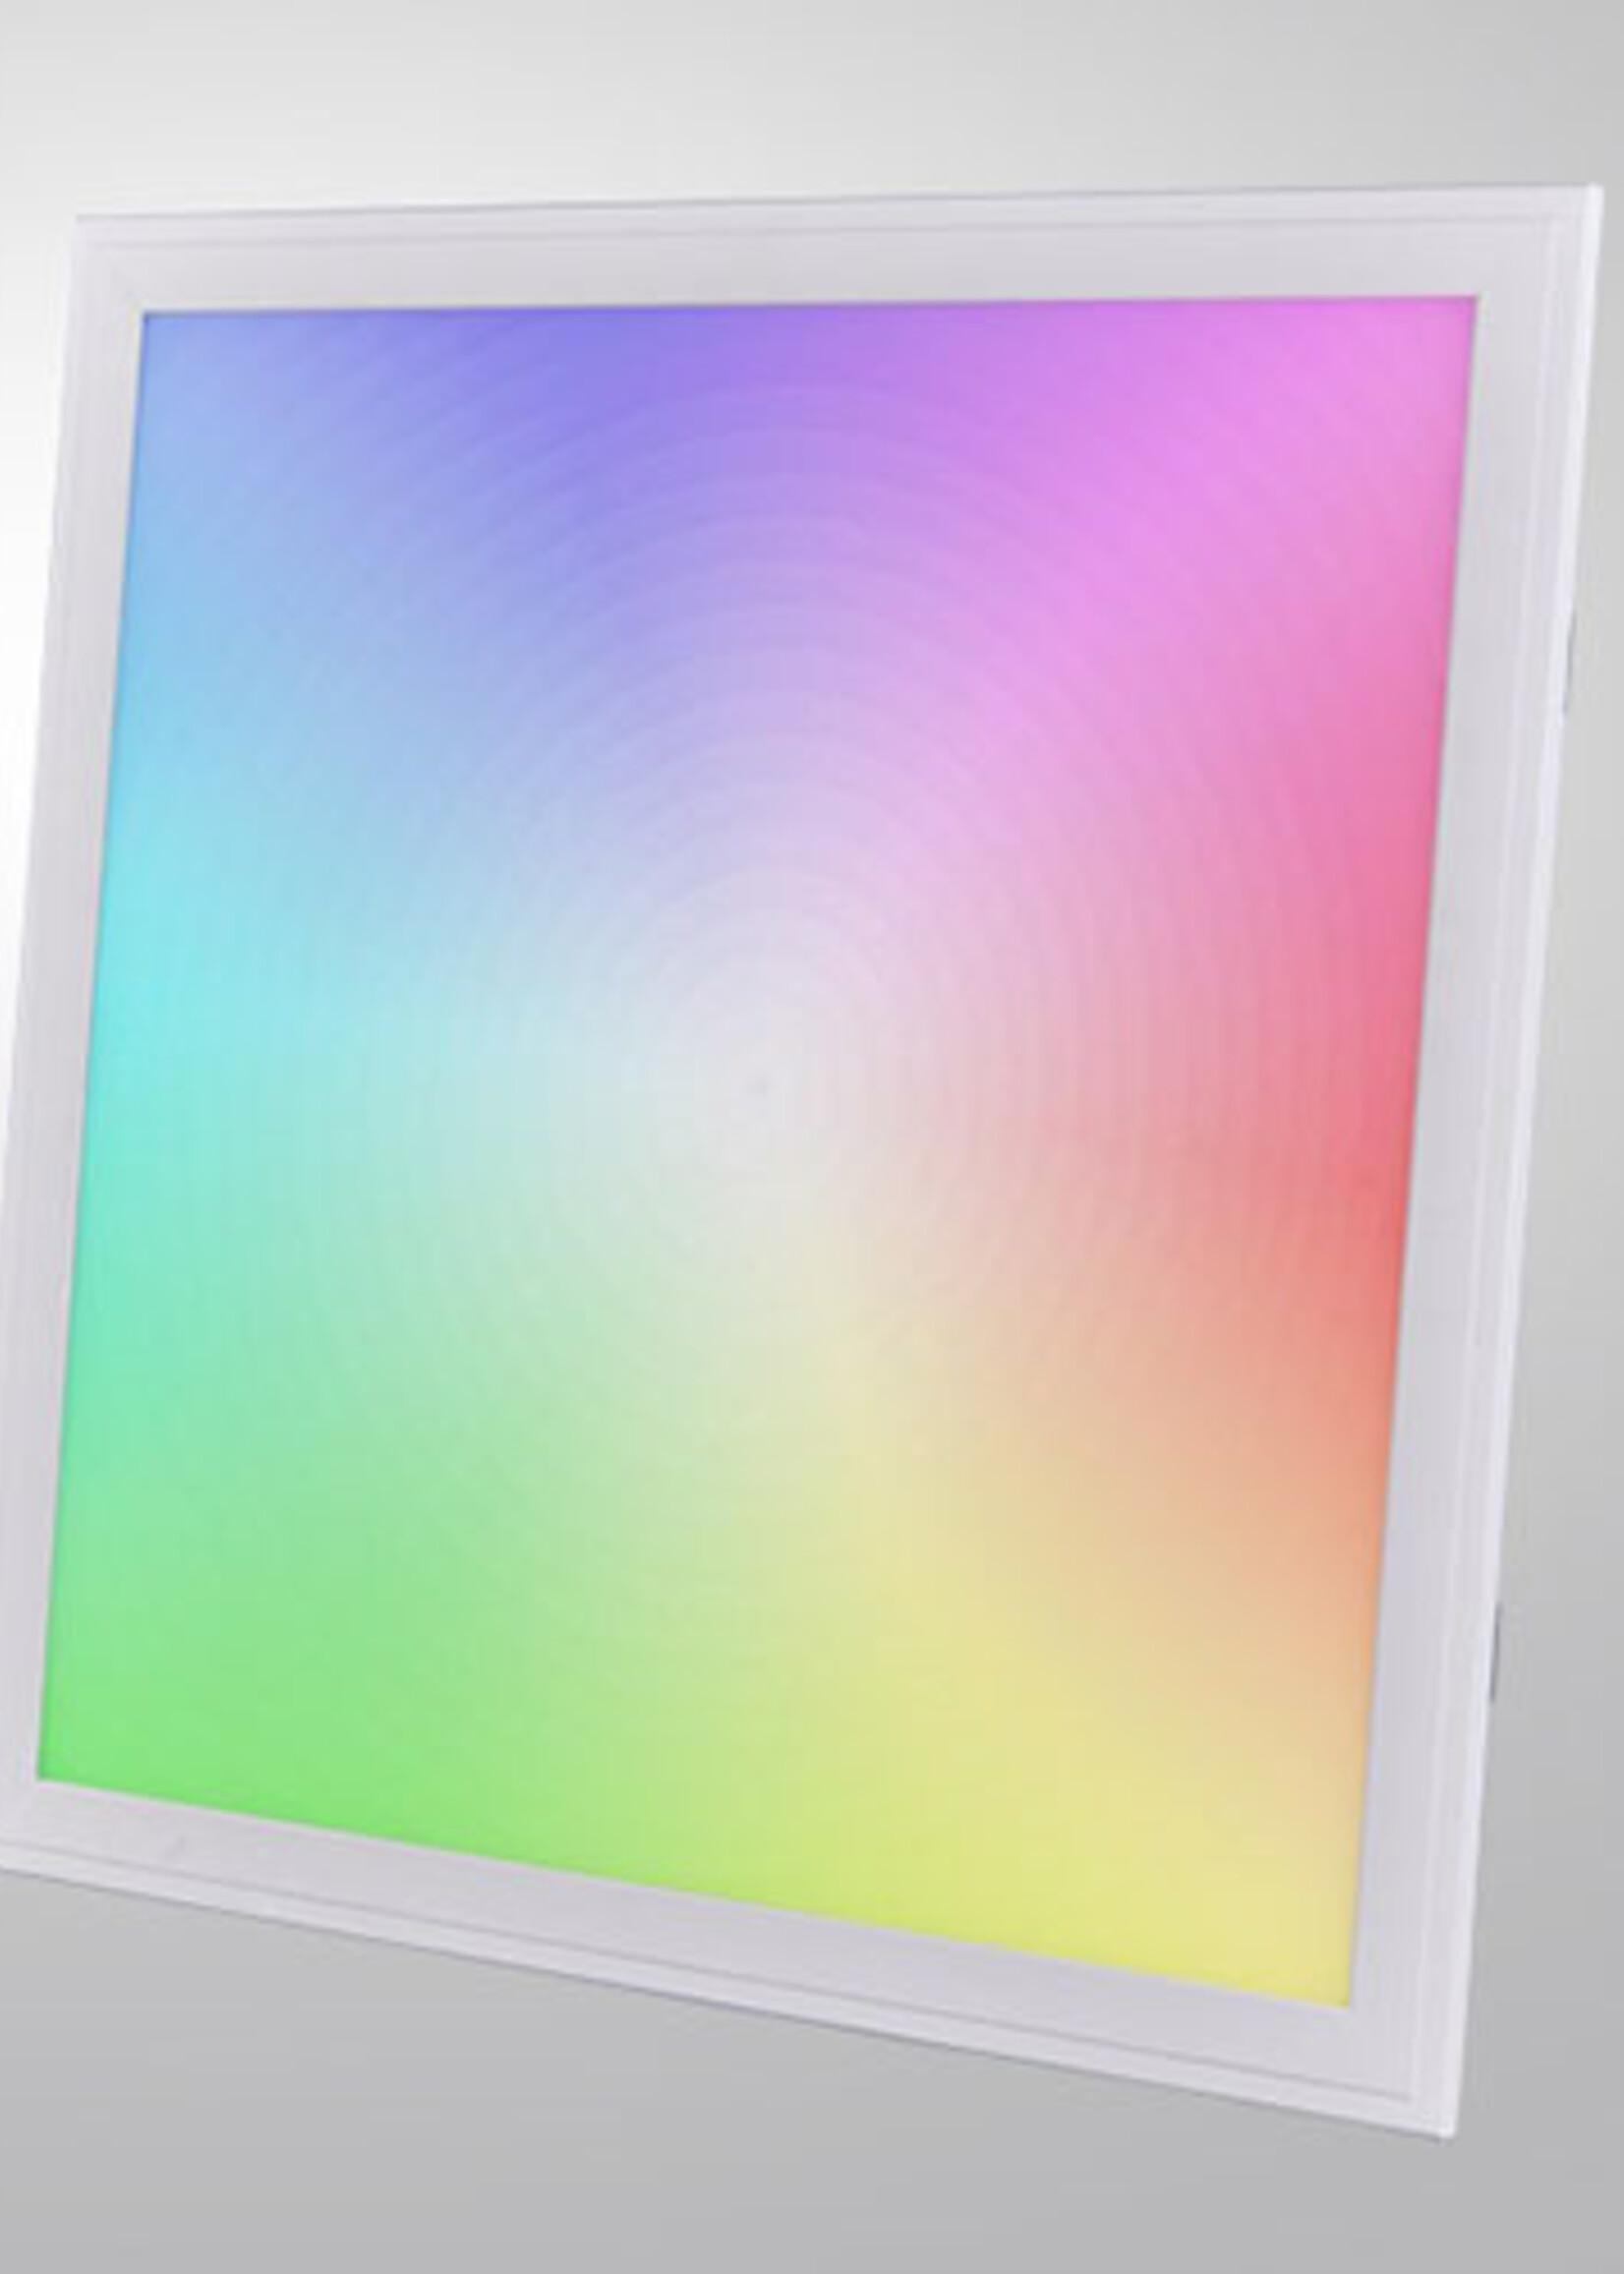 LEDWINKEL-Online WiFi LED Panel 60x60cm RGB+CCT 36W Edge-lit